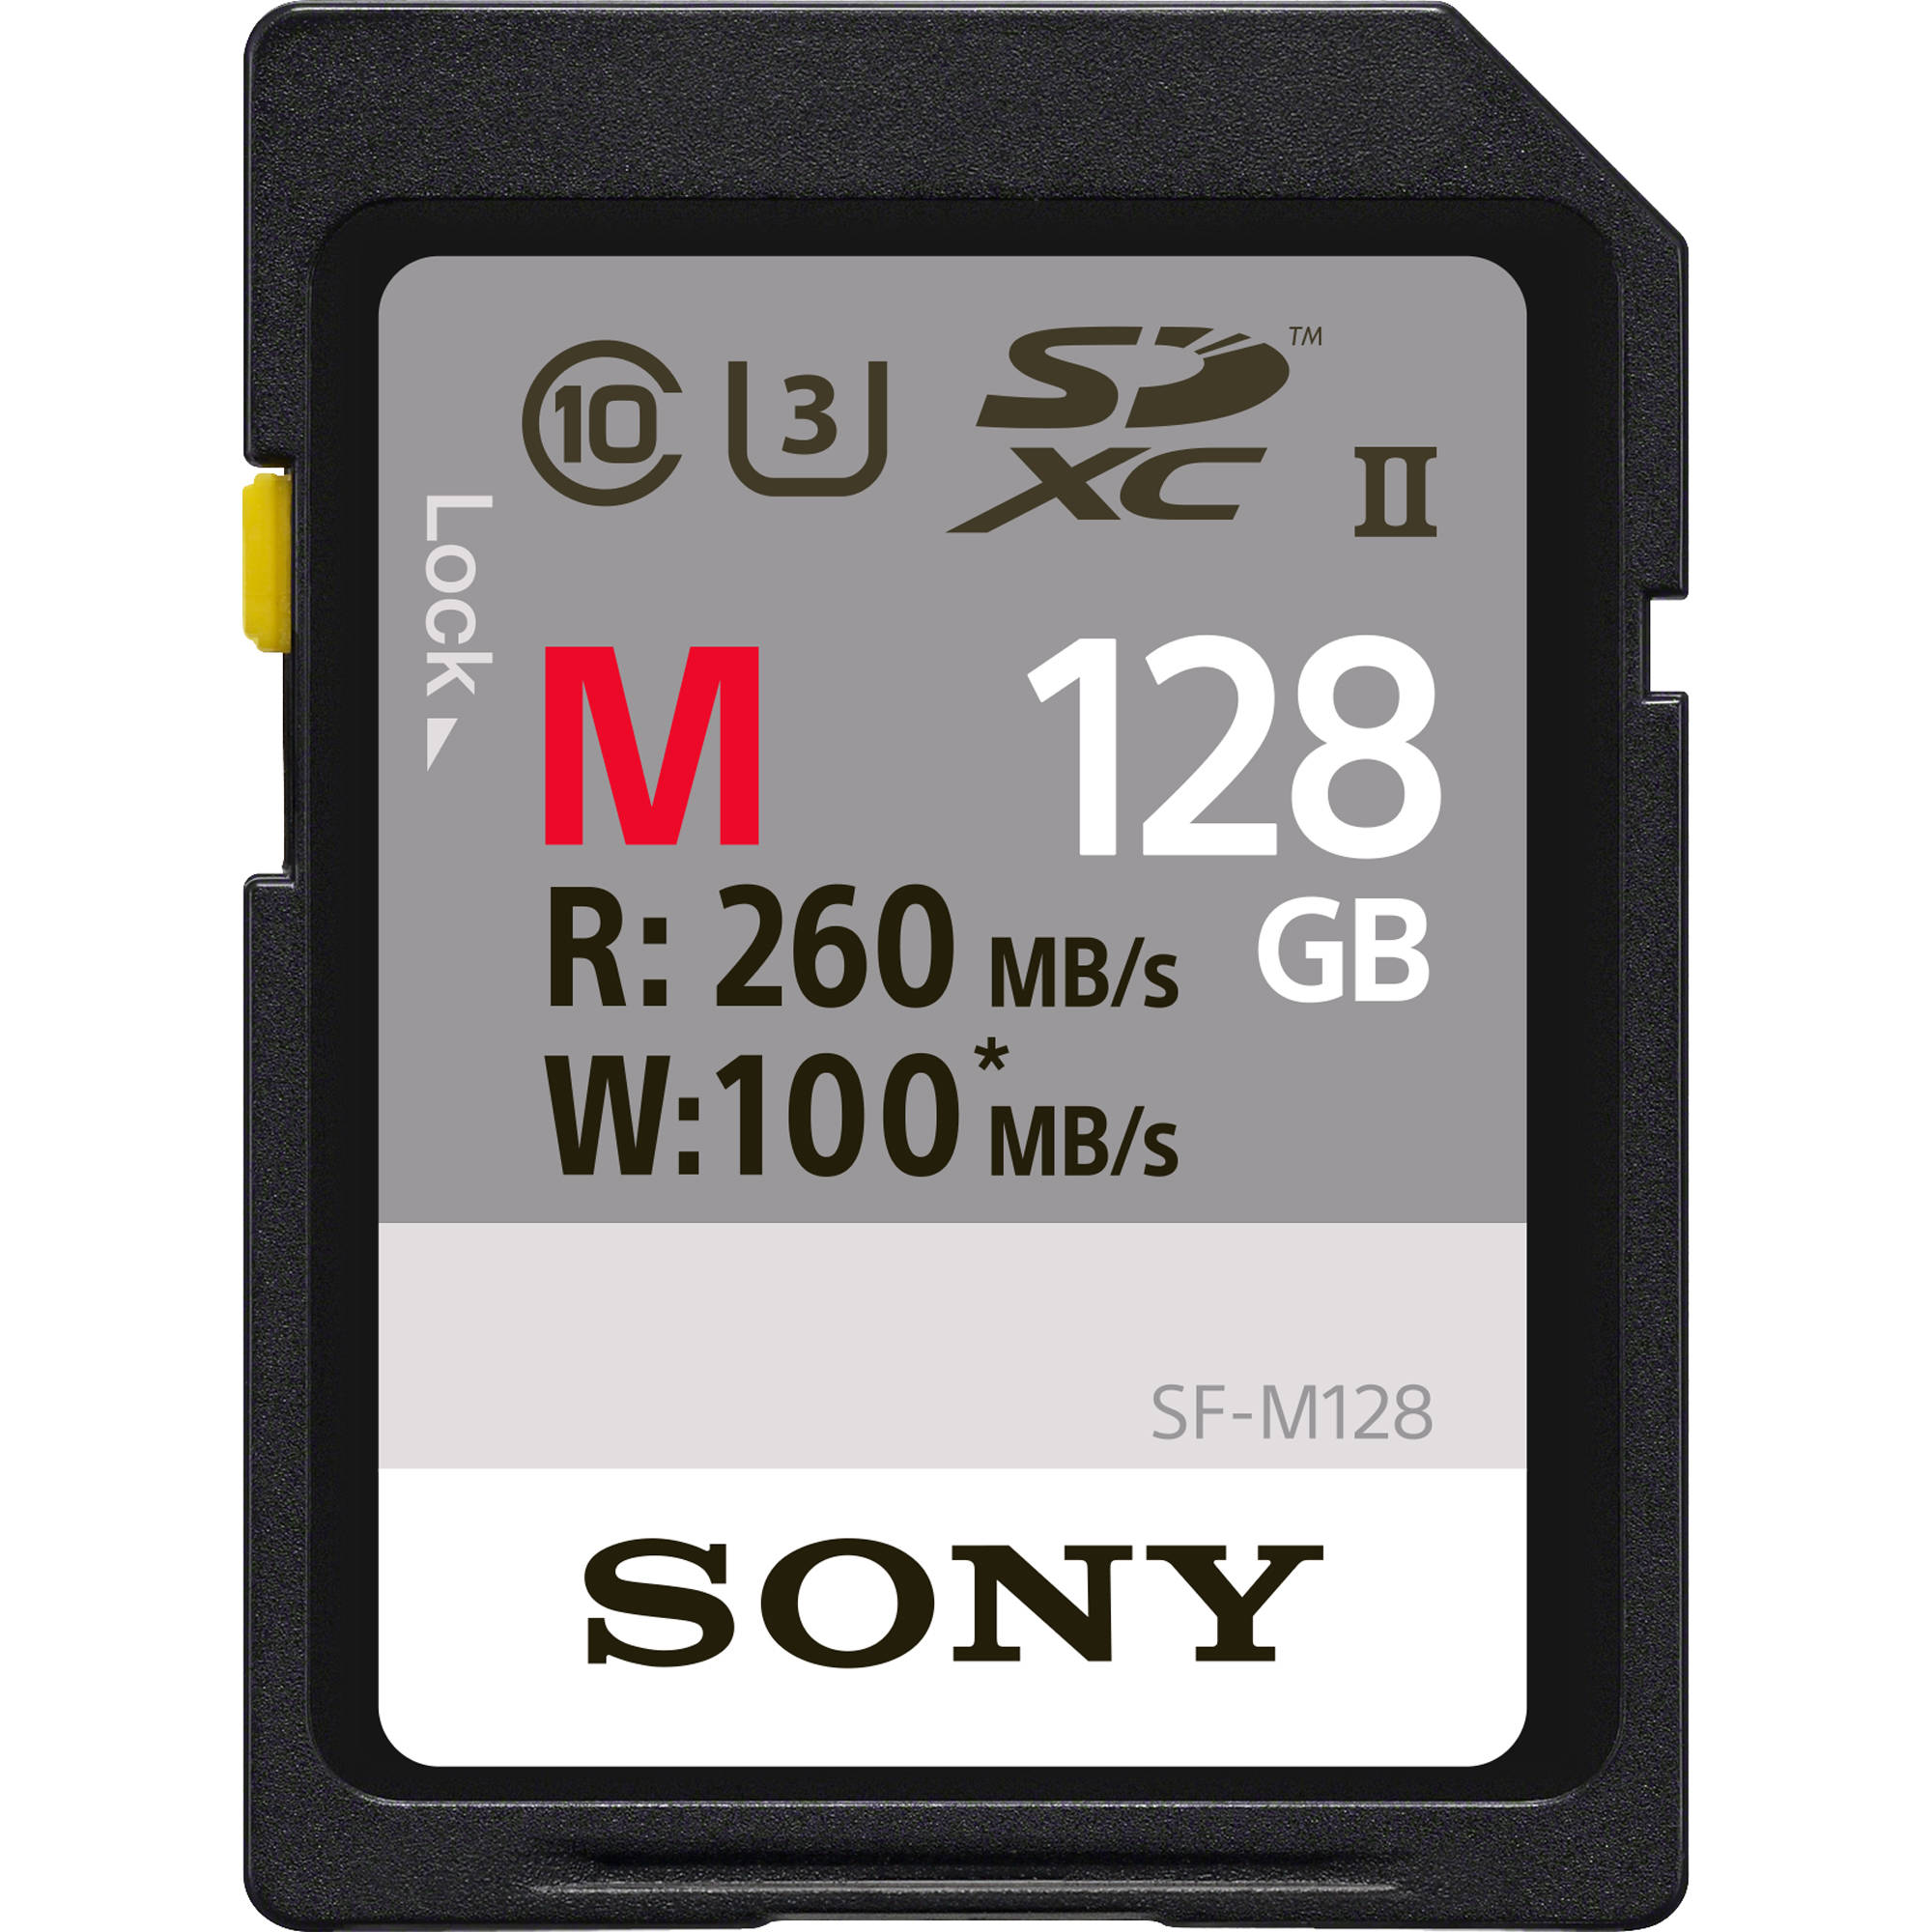 Новая SD-карта Sony получила рекордную скорость чтения и записи